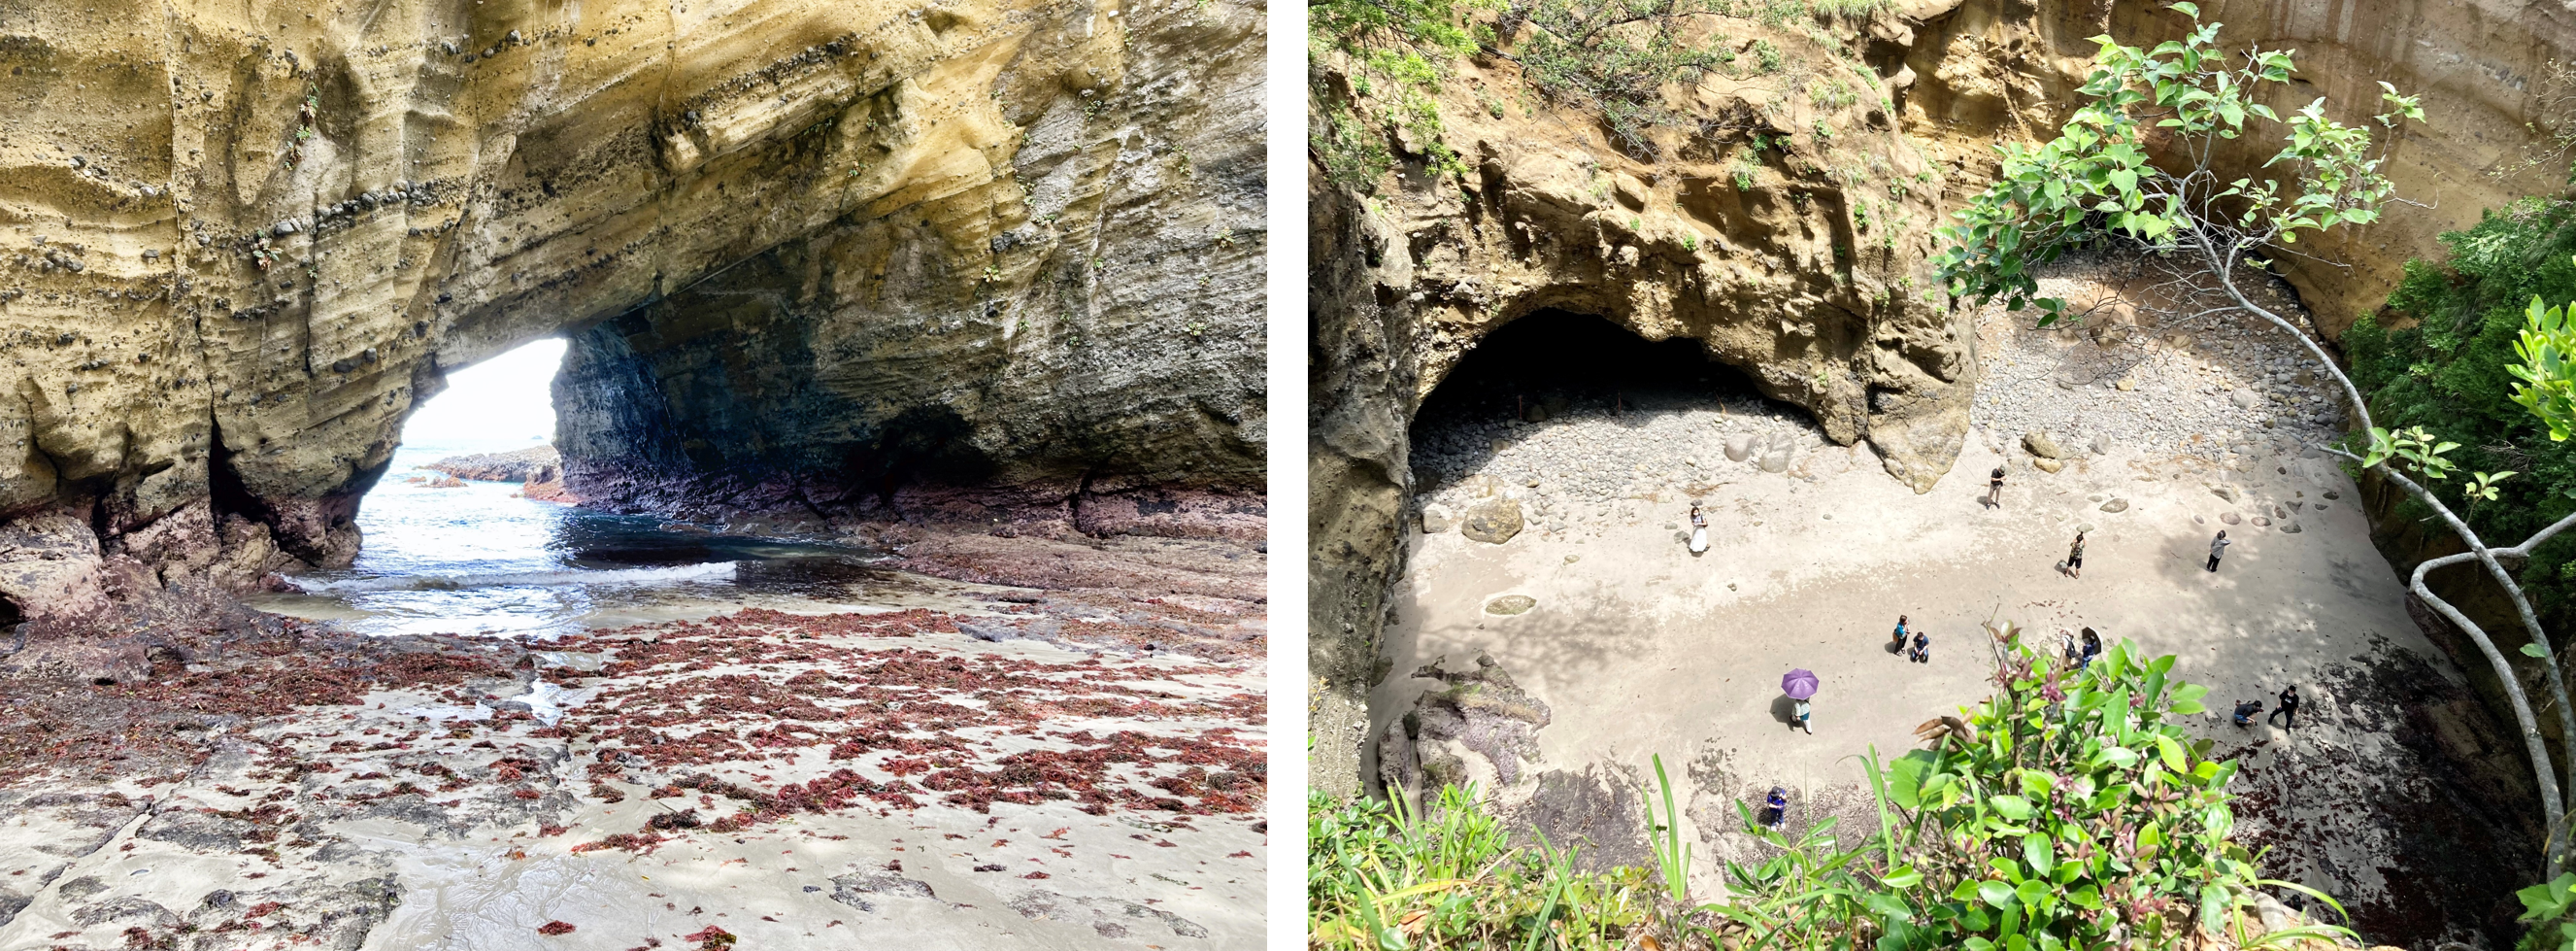 波が海岸の波にうちつけると、崖の弱い部分（柔らかい地層や断層など）が削られていき、洞窟ができることがあります。こうしてできる海の洞窟を海食洞（かいしょくどう）と呼びます。田牛（とうじ）の龍宮窟（りゅうぐうくつ）は、おおきな海食洞の天井が一部崩れて、直径40～50メートルほどの天窓が開いたものです。龍宮窟の天窓は伊豆の各地にあるものの中でも最大級であり、道路沿いの入口から洞窟を通って天窓の下に立つこともできます。洞窟の壁には、海底火山から噴出した黄褐色の火山れきが美しく層をなし、天窓の底を満たす青い海水とのコントラストが神秘的な場所です。また、龍宮窟を見下ろす遊歩道も整備されていて、この神秘的な海食洞をさまざまな場所から観察することができます。木々の間から遠く見える伊豆諸島の姿もステキです。